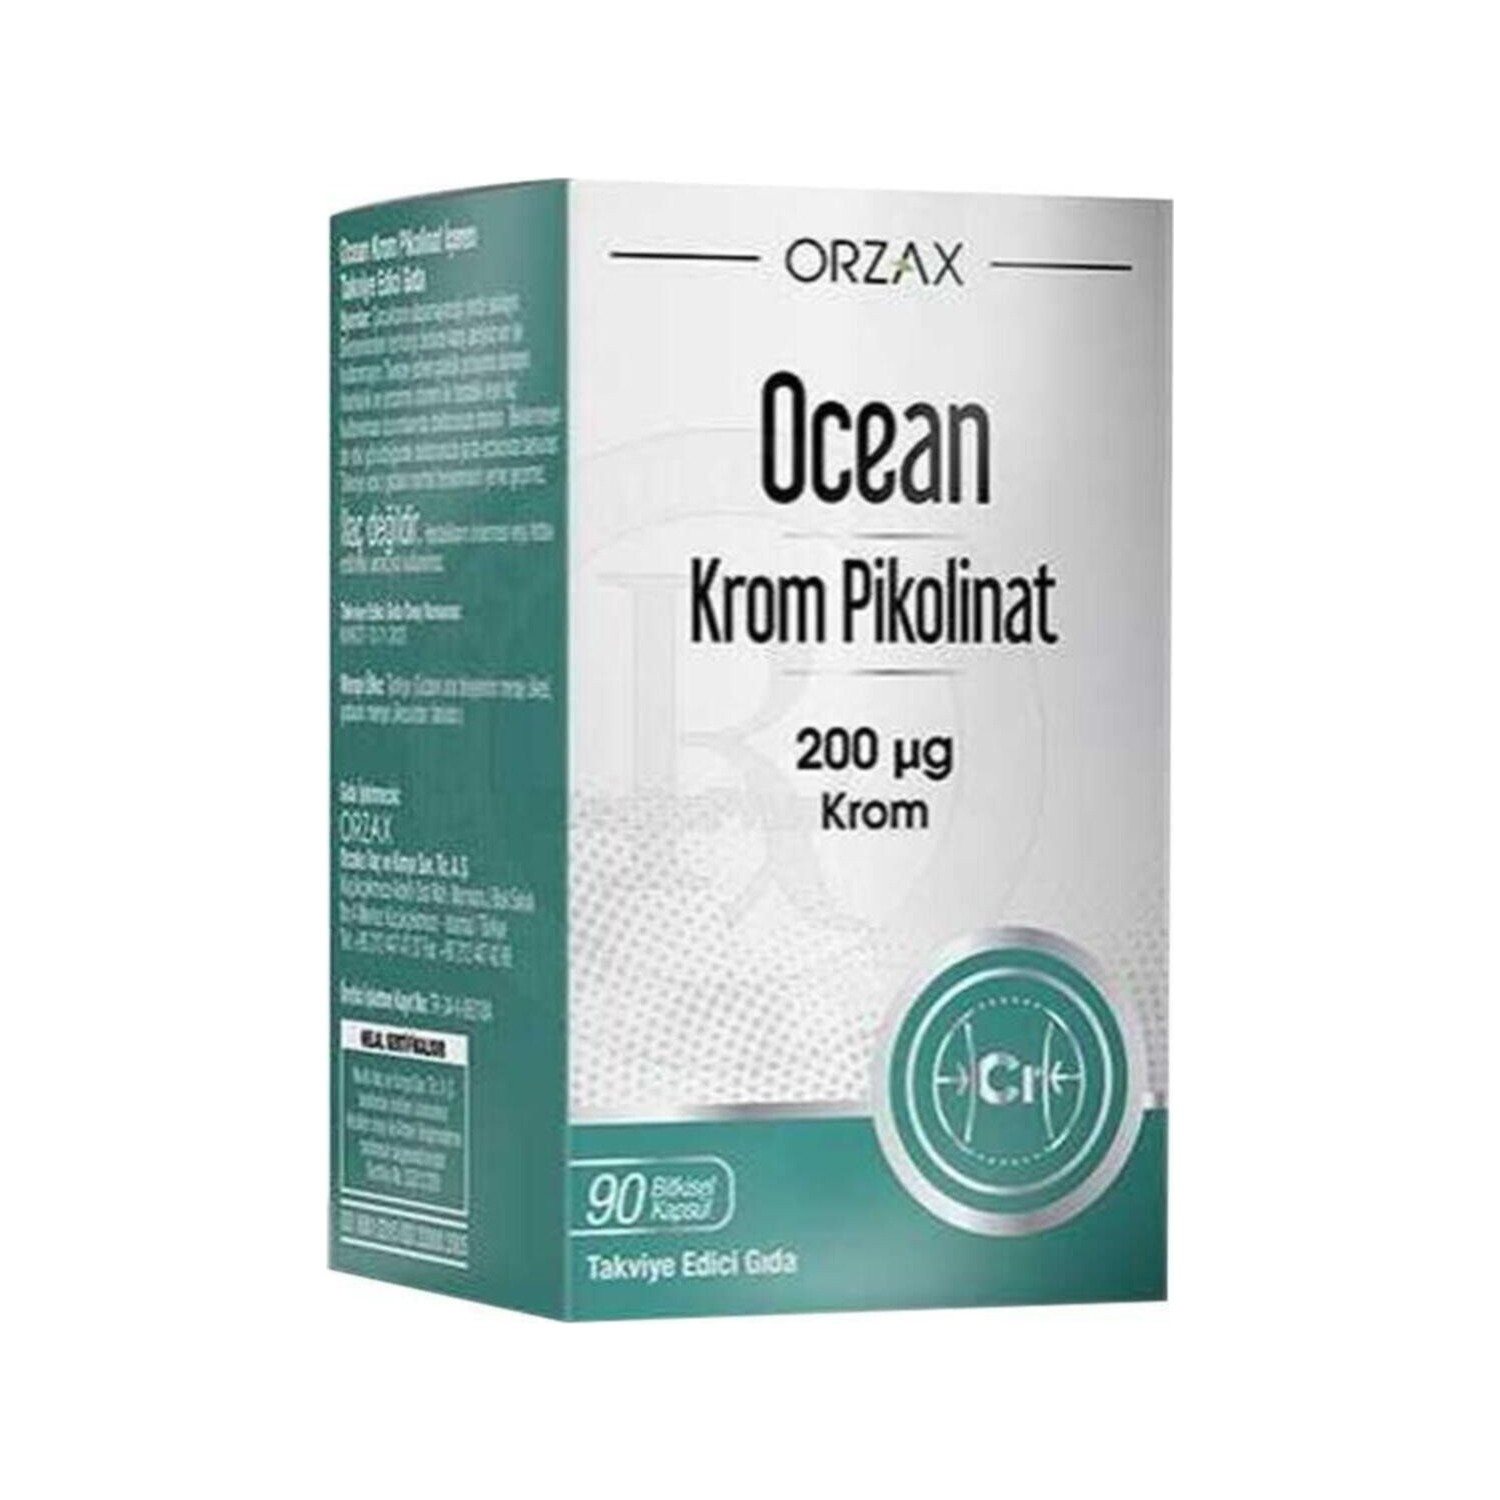 Пиколинат хрома Ocean 20 мкг, 90 капсул пиколинат хрома ocean orzax 20 мкг 90 капсул